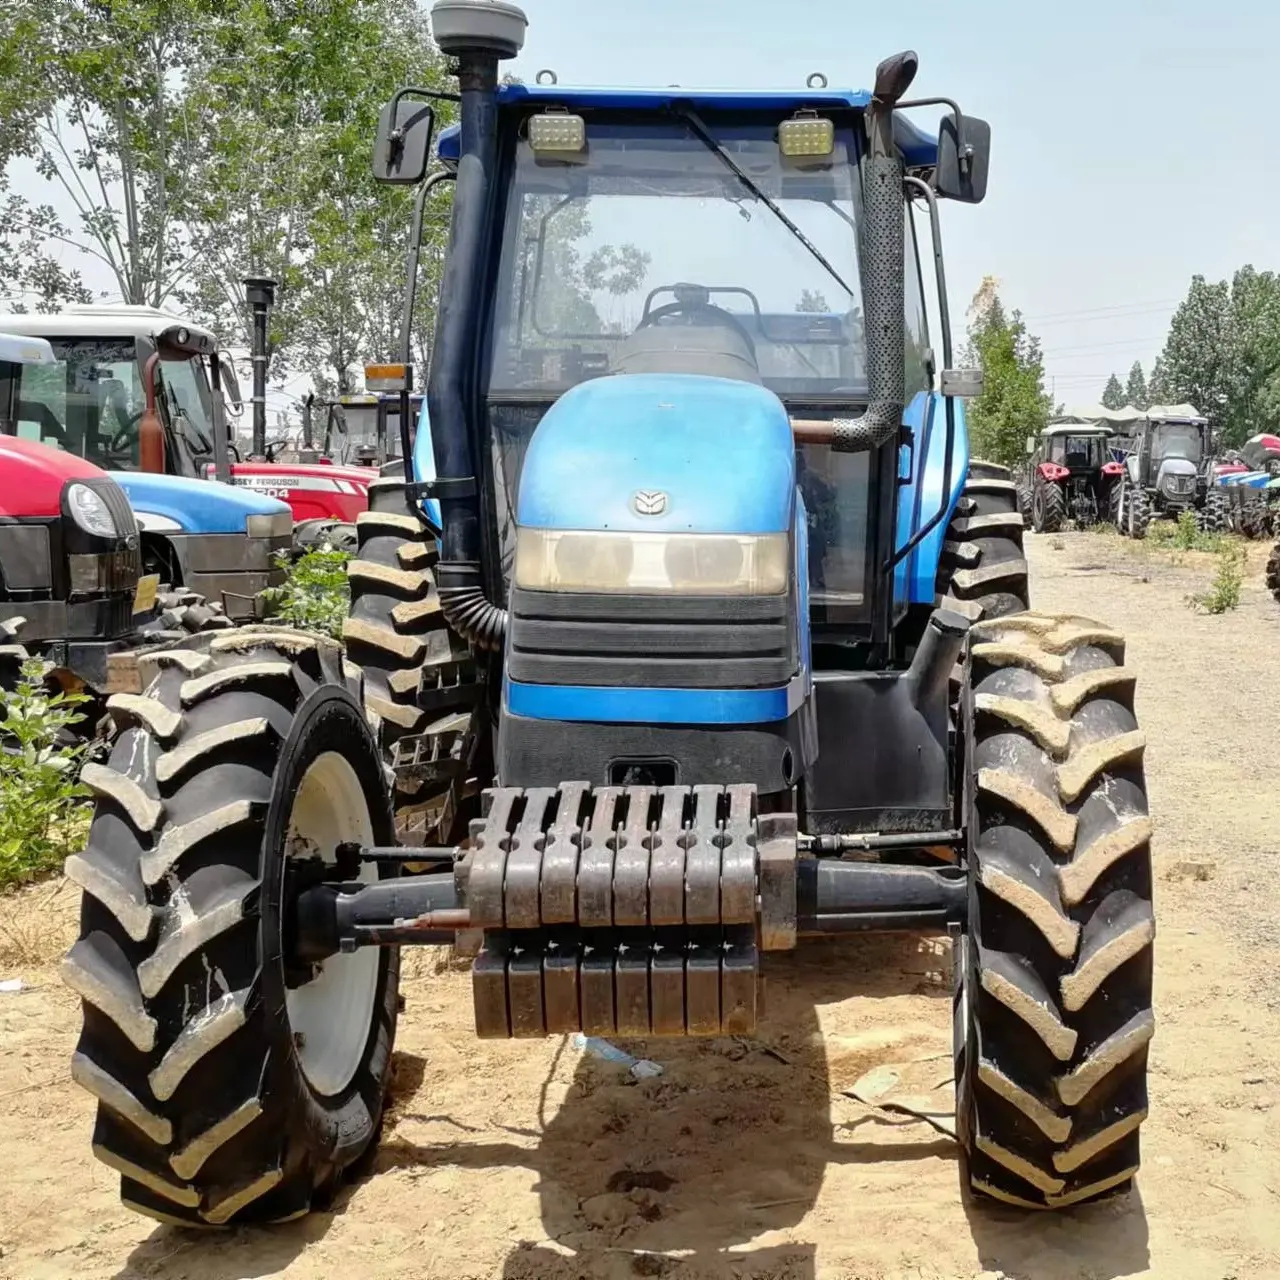 Trator usado novo holland snh1204 120hp 4x4wd novo trator de roda de fazenda com pequeno equipamento de maquinaria agrícola compacto